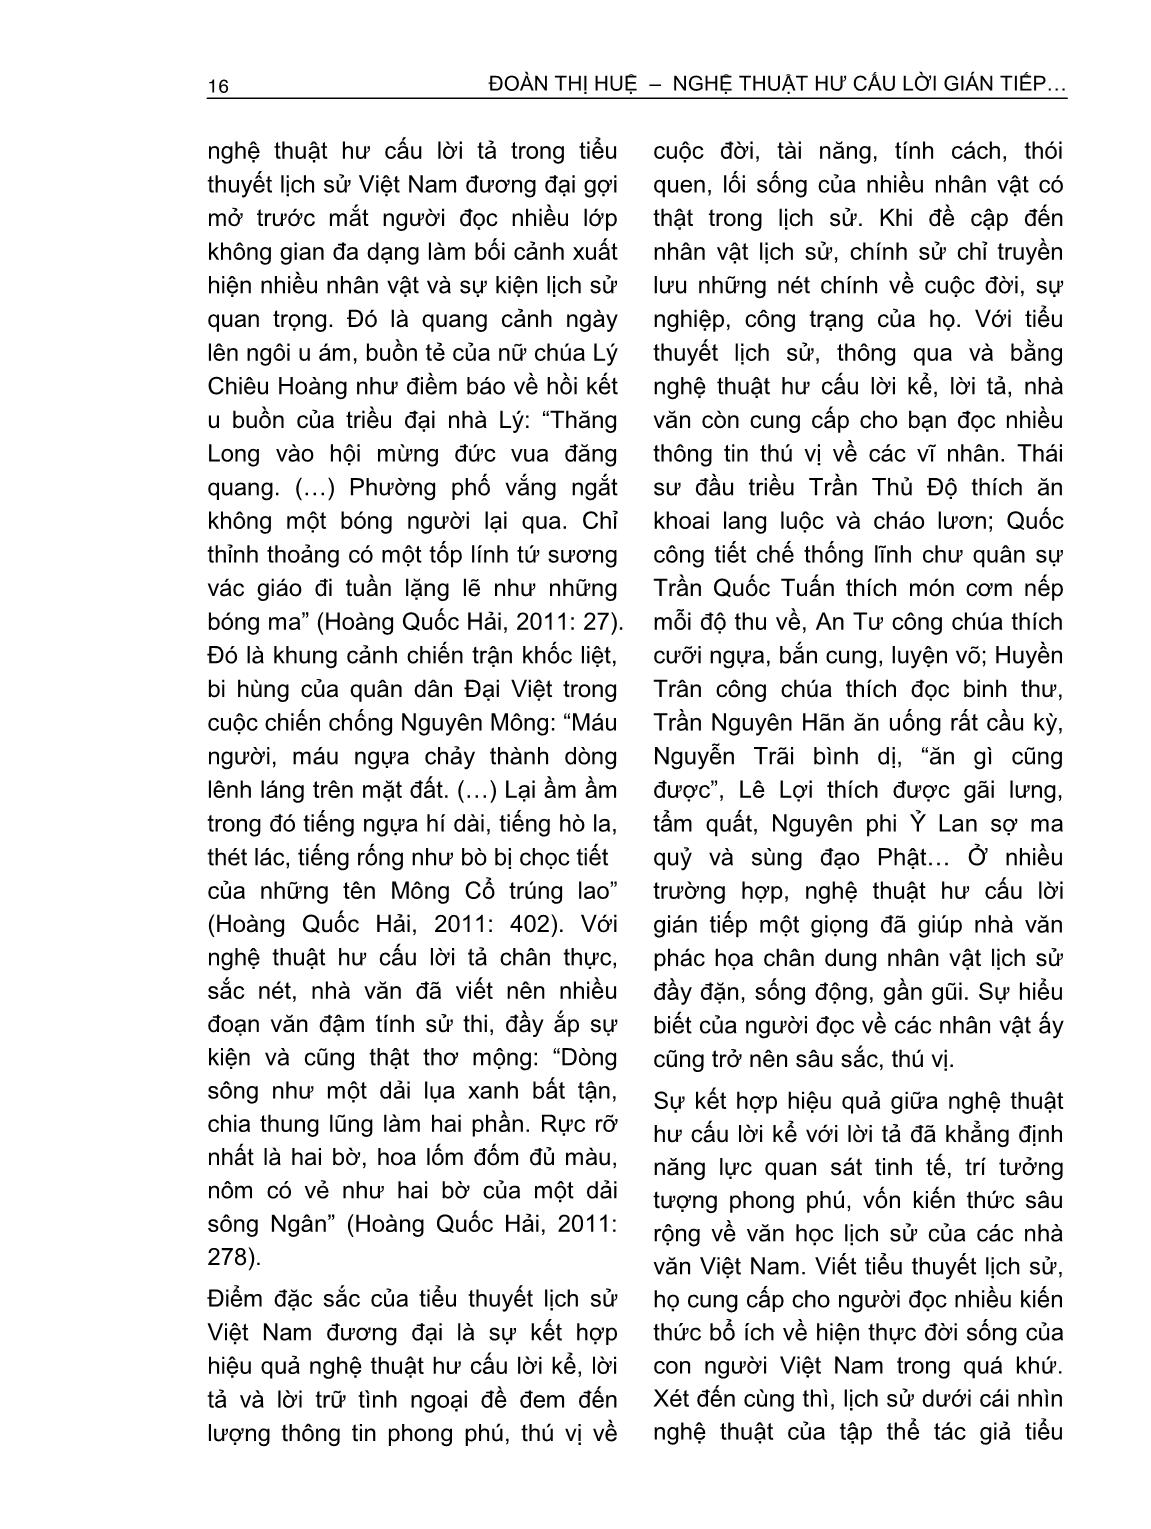 Nghệ thuật hư cấu lời gián tiếp trong tiểu thuyết lịch sử Việt Nam đương đại trang 4